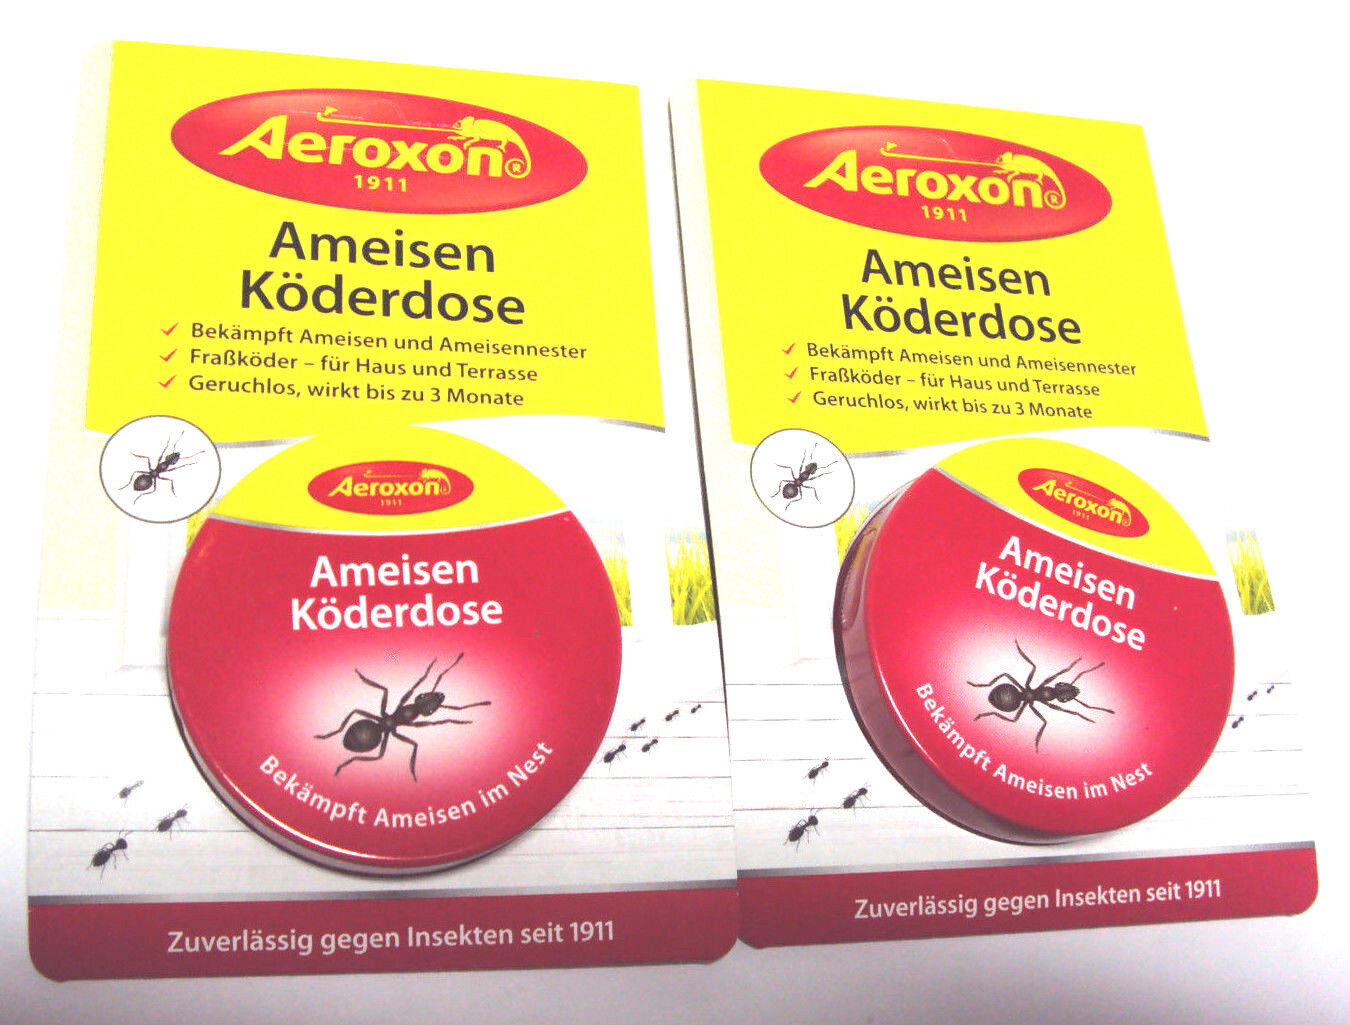 Aeroxon 2 x  Ameisenköderdose, Fraßköder geruchlos, wirkt bis zu 3 Monate.